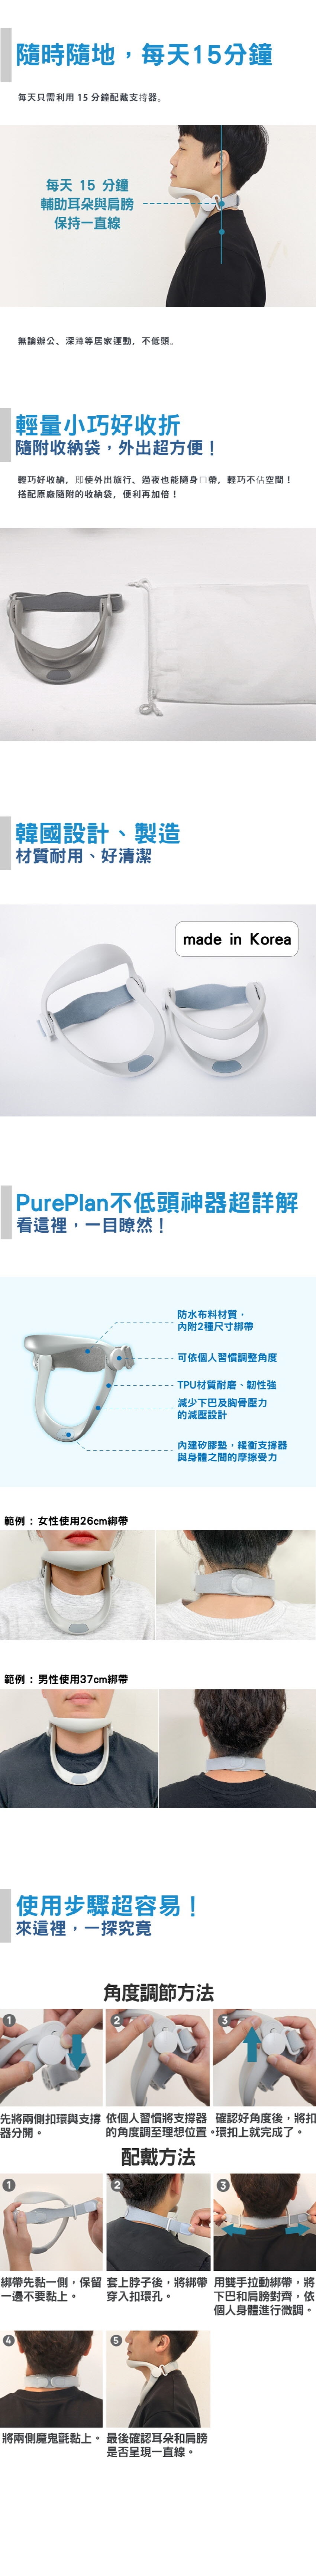 韓國 PurePlan 頸椎保護器-銷售量突破10萬隻 輕型 滿意度96% 1 件